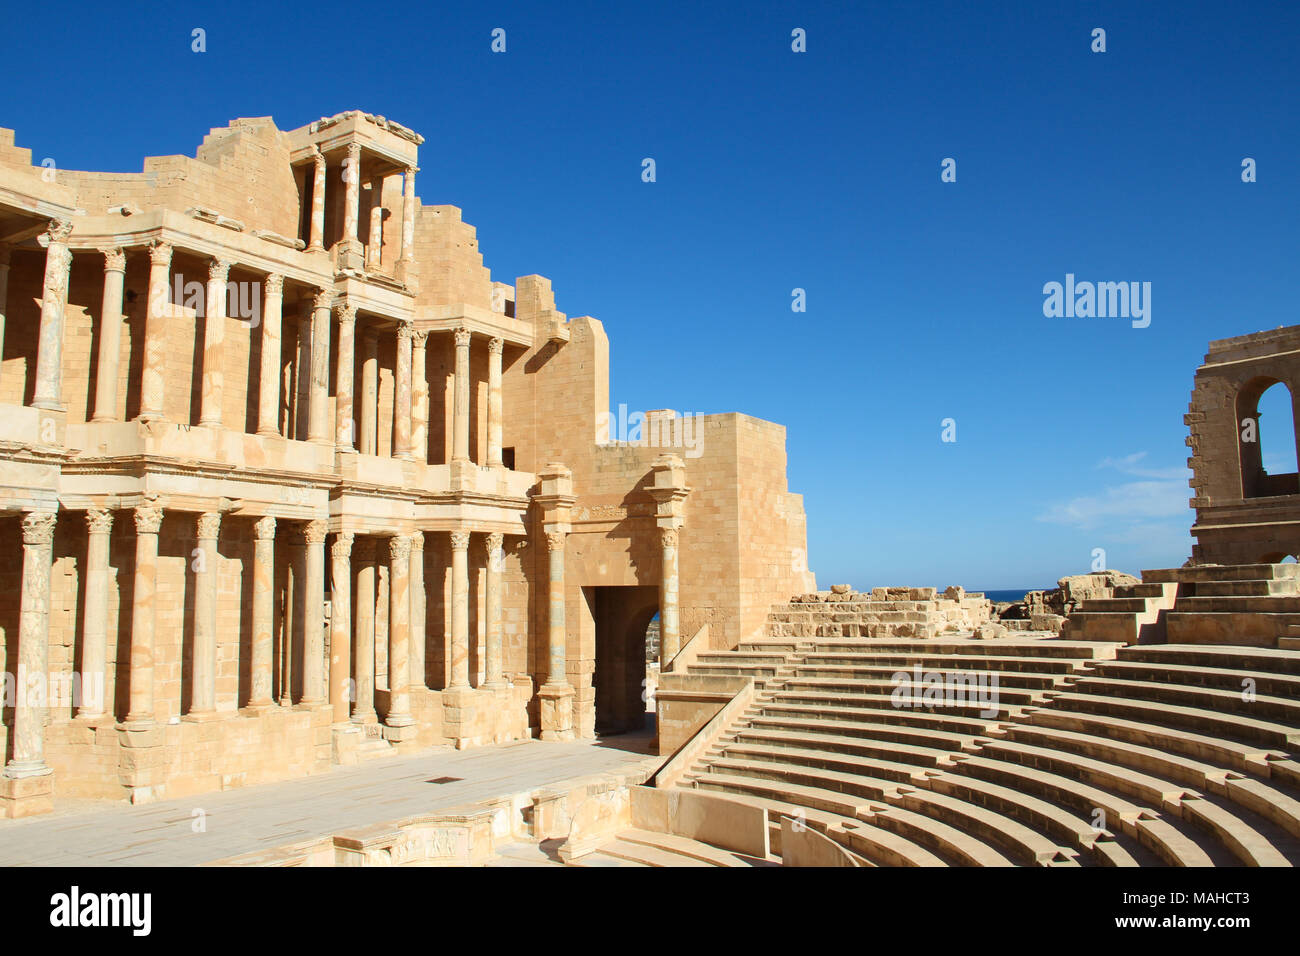 Parzialmente agevolato ricostruito teatro della antica città romana di Sabratha weat di Tripoli, Libia Foto Stock